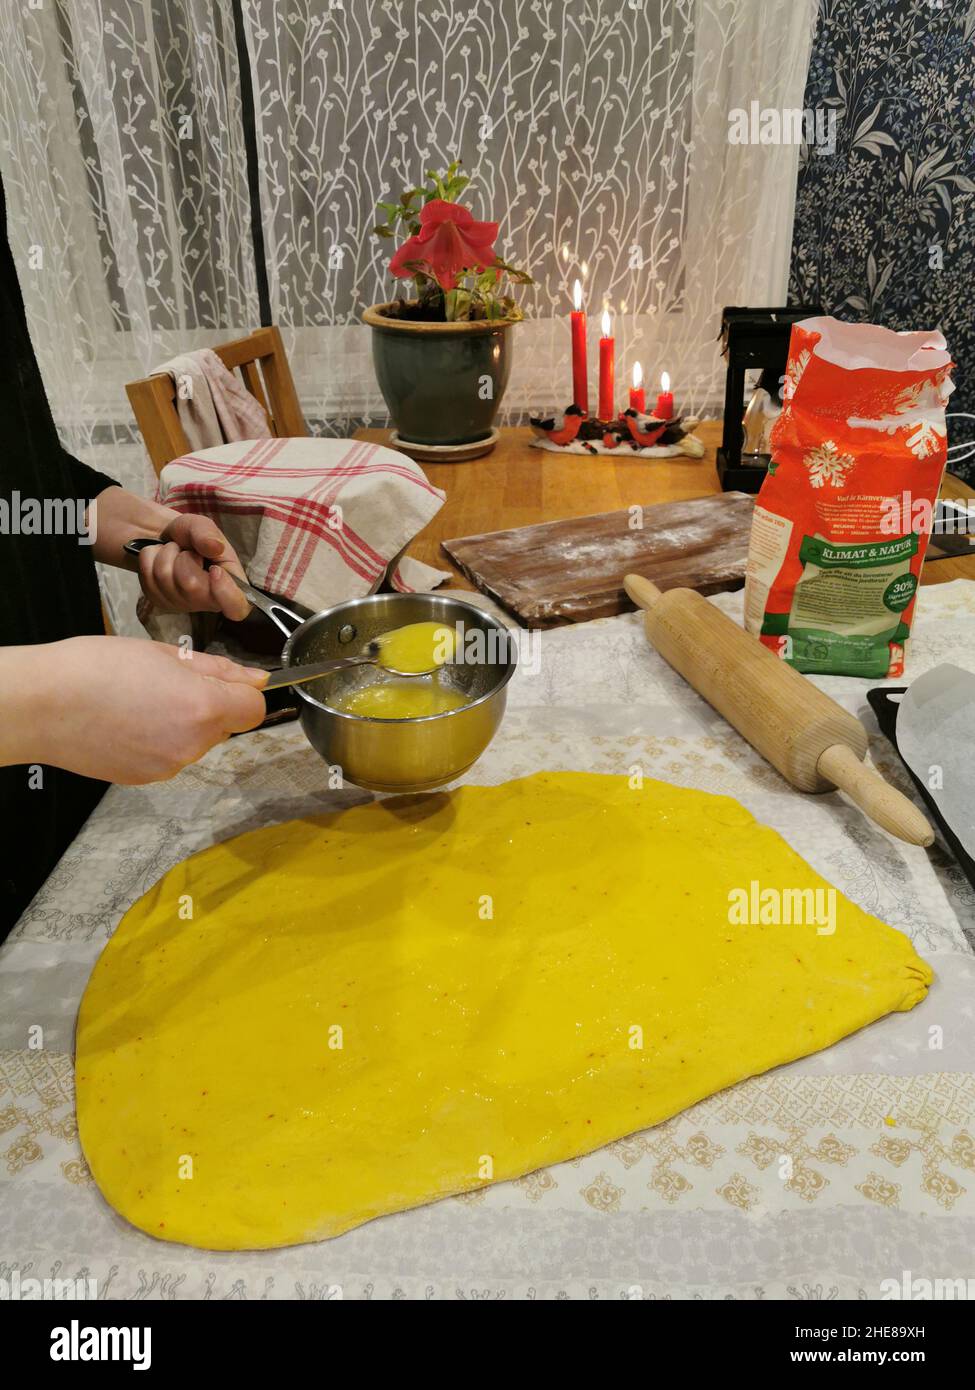 Safran-Brötchen im Küchenhintergrund, schwedische Tradition Stockfoto